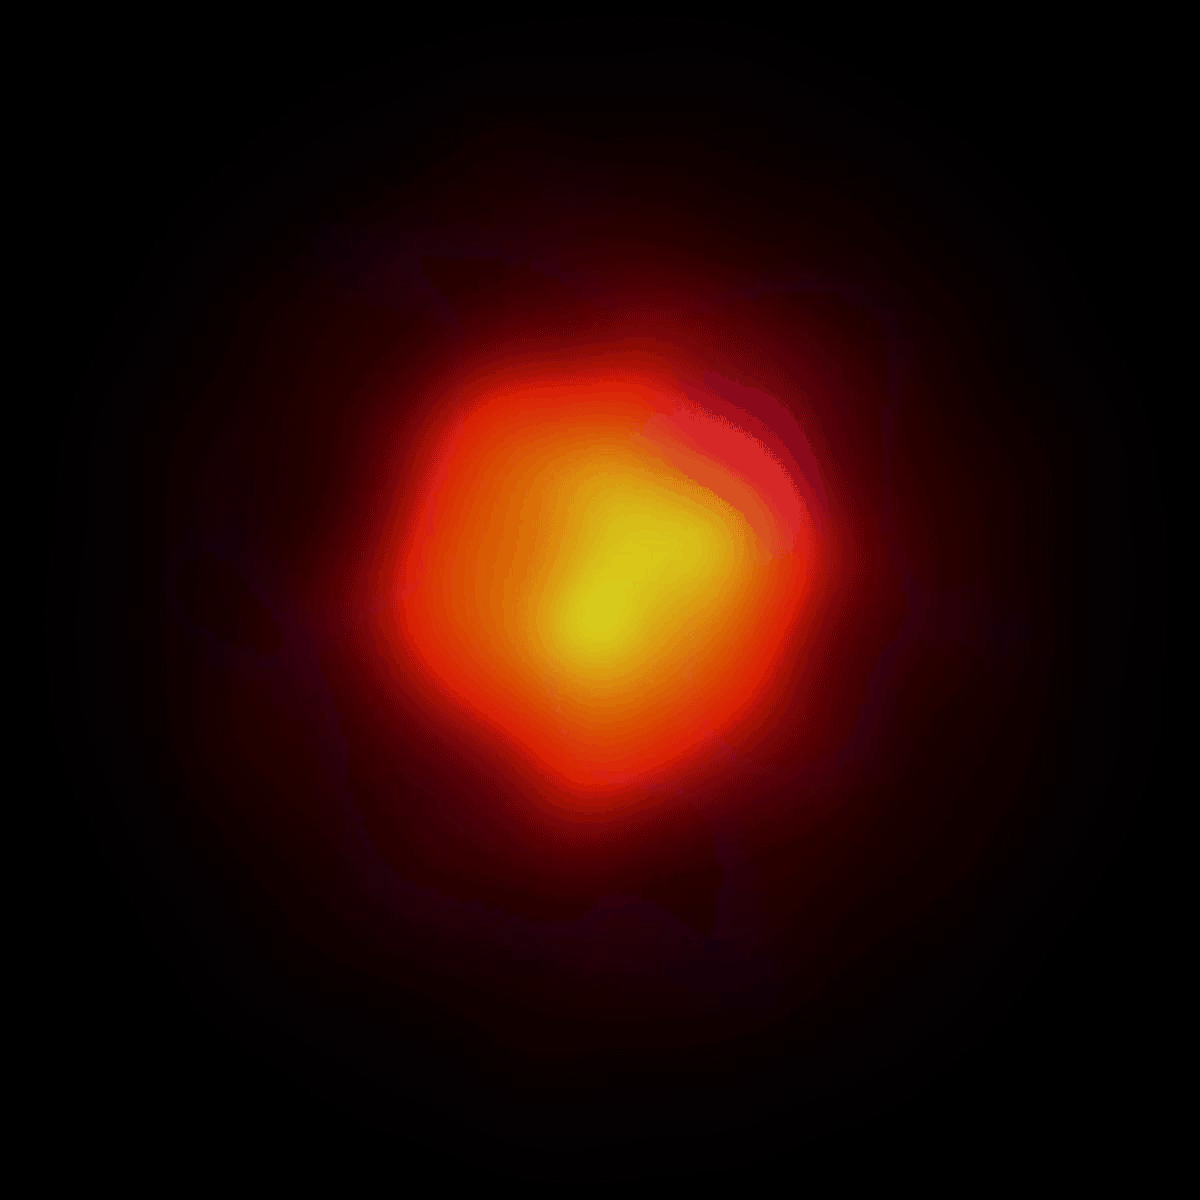 Questa animazione ad alta risoluzione cattura la radiazione a onde submillimetriche della stella in una tavolozza di colori caldi, illustrando l'attività vigorosa negli strati esterni della stella. Le tonalità più fredde mappano la danza intricata dei maser di cianuro di idrogeno (HCN) rilevati nella banda 10 di ALMA a una frequenza impressionante di 891 GHz. L'animazione mostra diverse parti del gas HCN in movimento a diverse velocità radiali. Il colore della velocità indica la direzione in cui si sta muovendo: lo spostamento verso il rosso (velocità positiva) significa che il gas si sta allontanando, mentre lo spostamento verso il blu (velocità negativa) significa che si sta avvicinando.